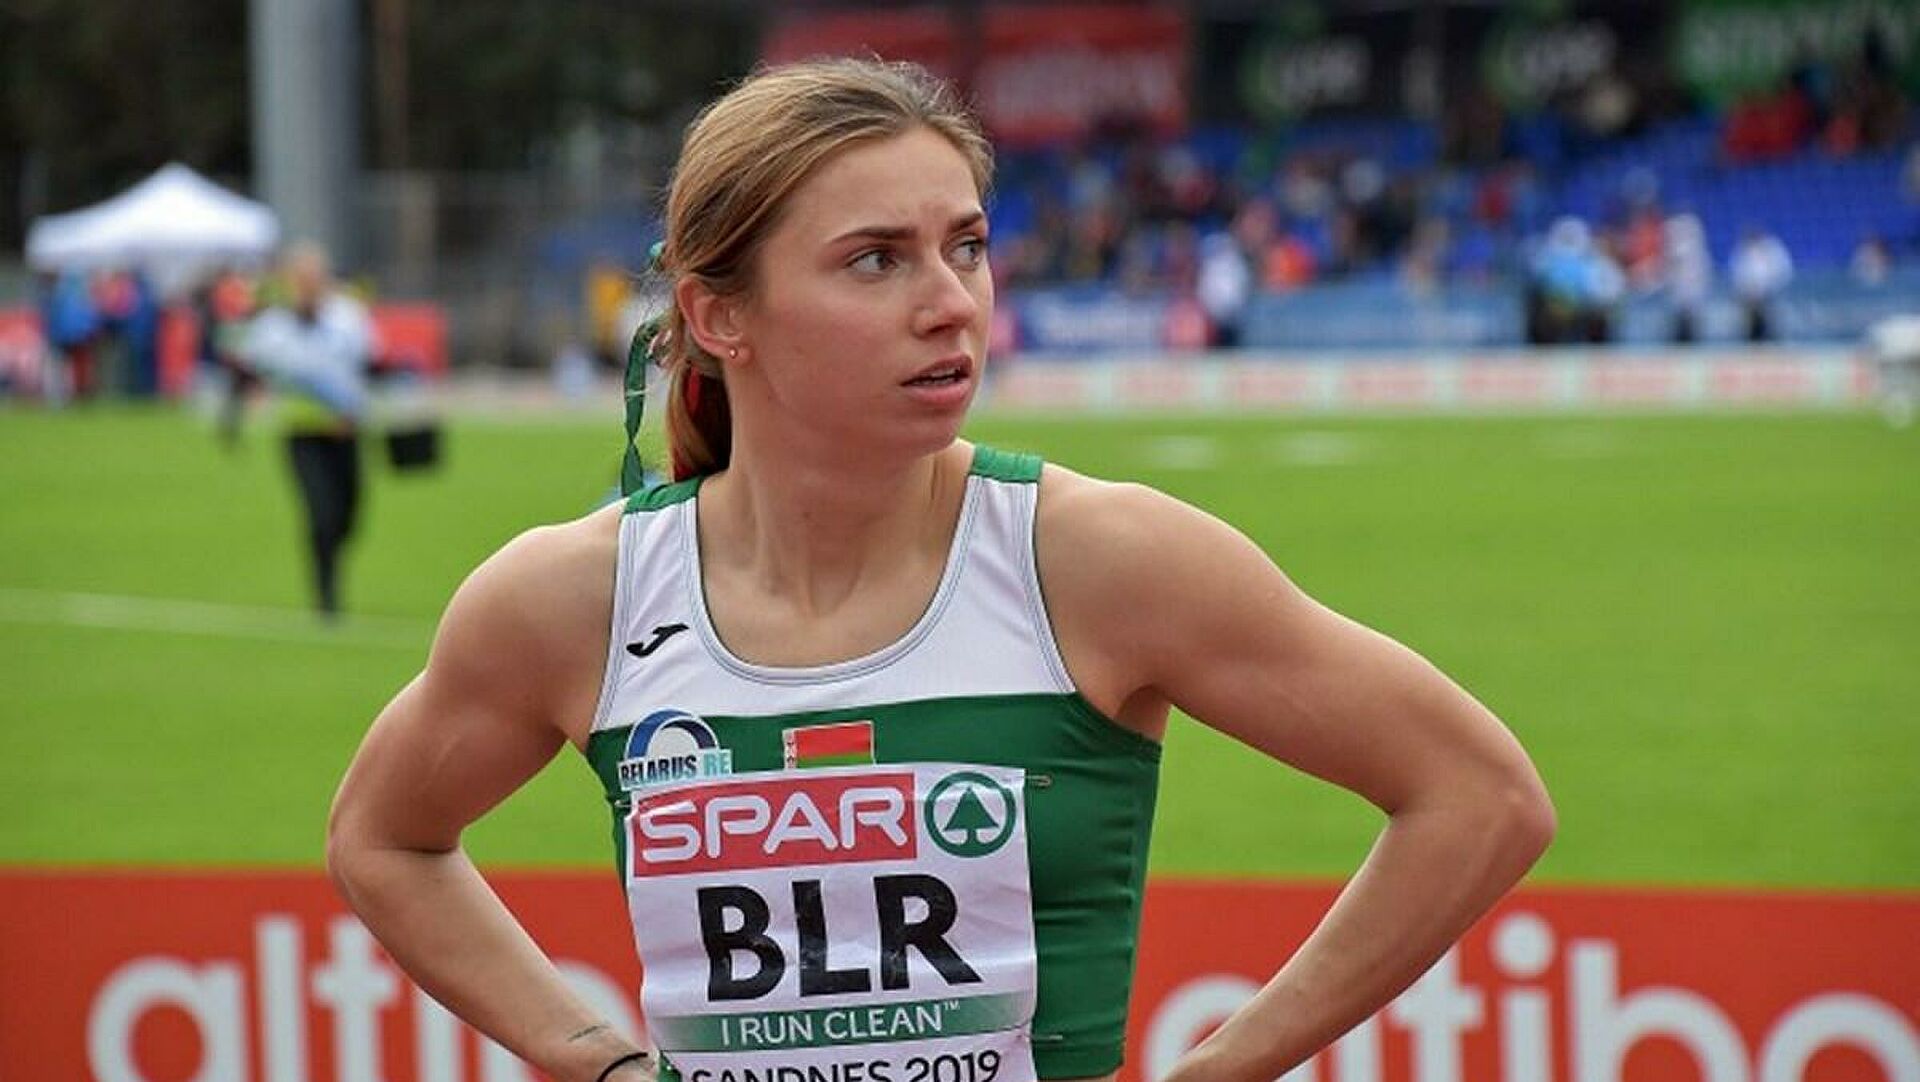 Спринт в Польшу: как белорусская бегунья Тимановская устроила скандал на Олимпиаде и отказалась ехать домой